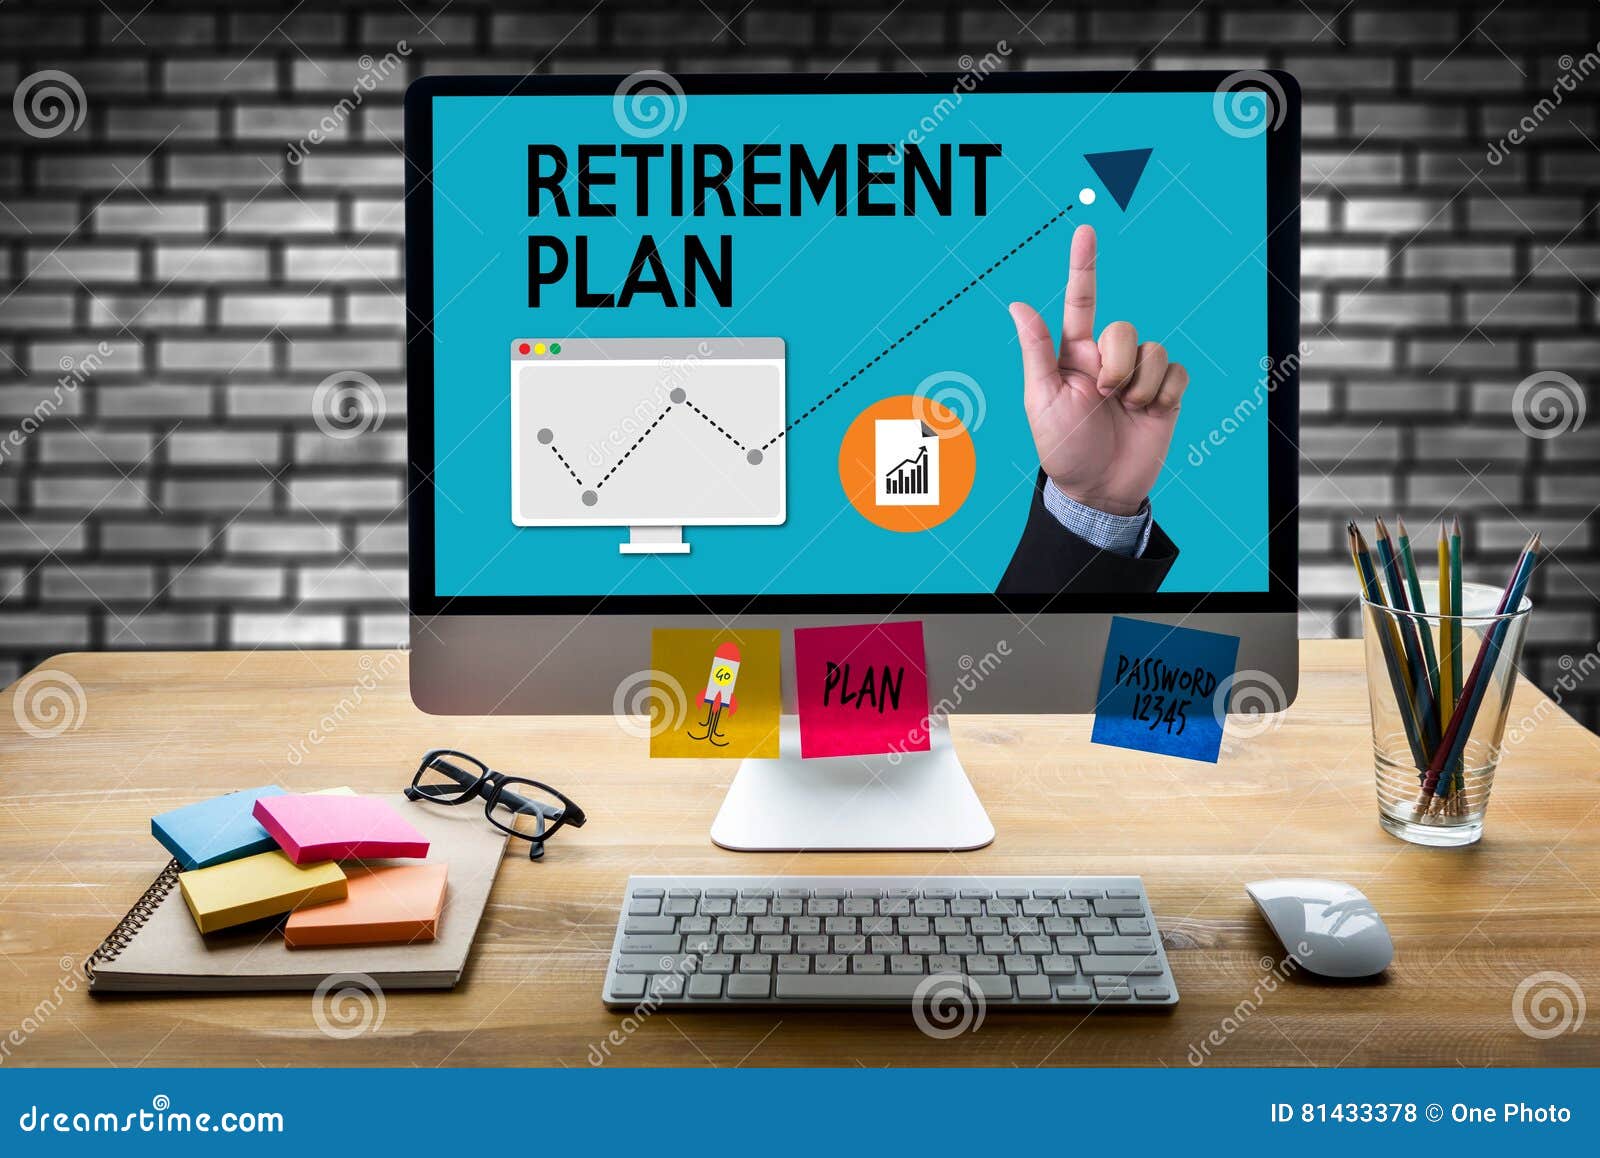 RETIREMENT PLAN Savings Senior Retirement Plan Pen Stock Illustration - of notebook: 81433378